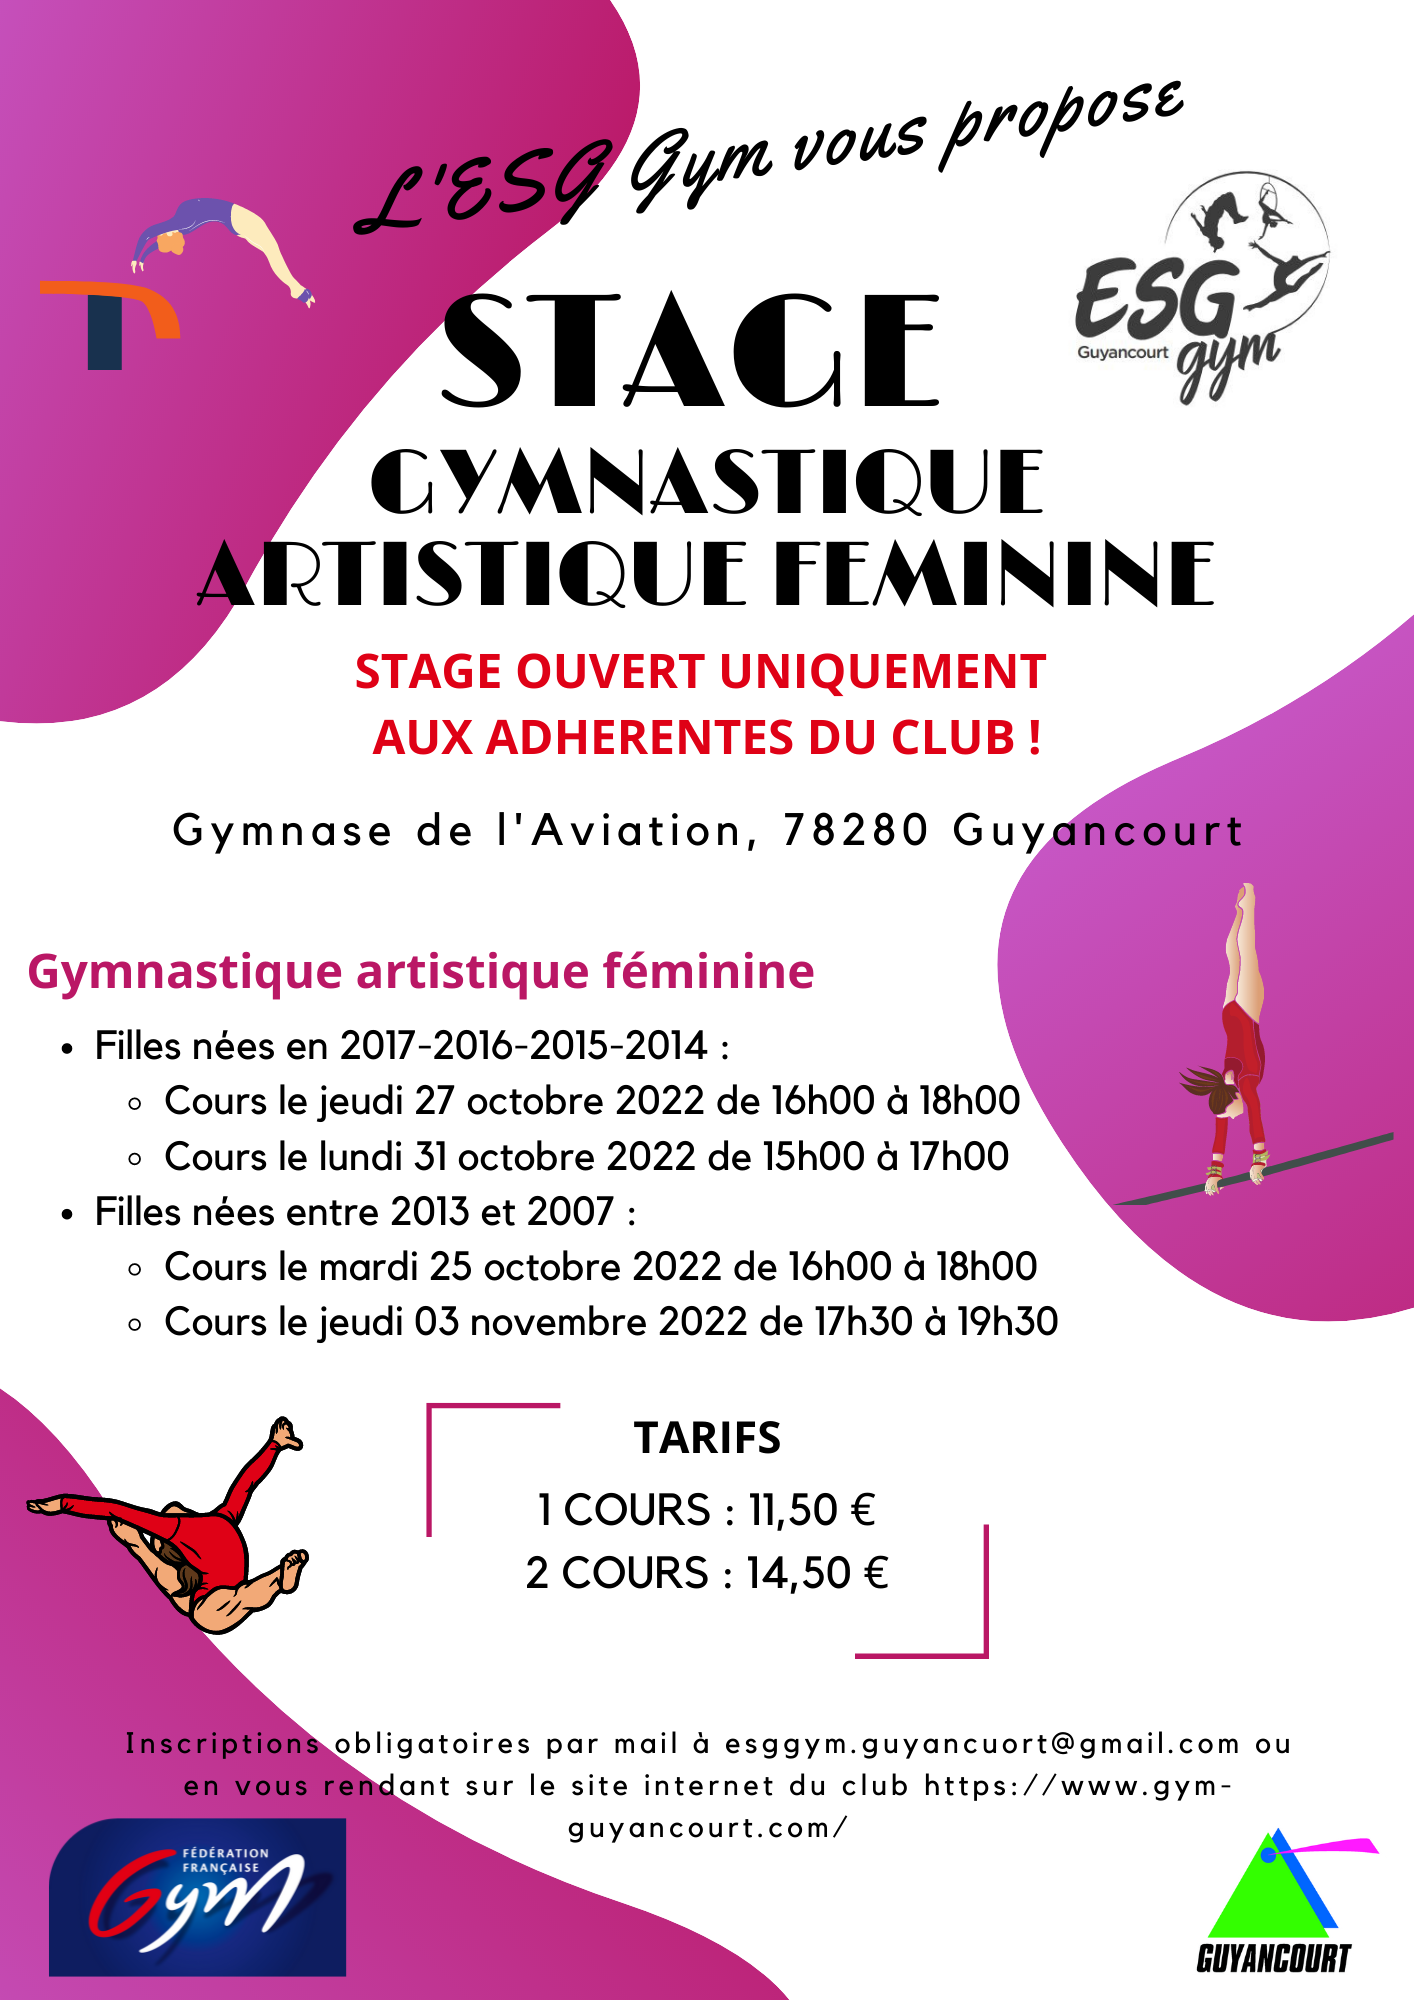 Stage Loisirs Gymnastique Artistique Féminine - Adhérentes ESG Gym UNIQUEMENT